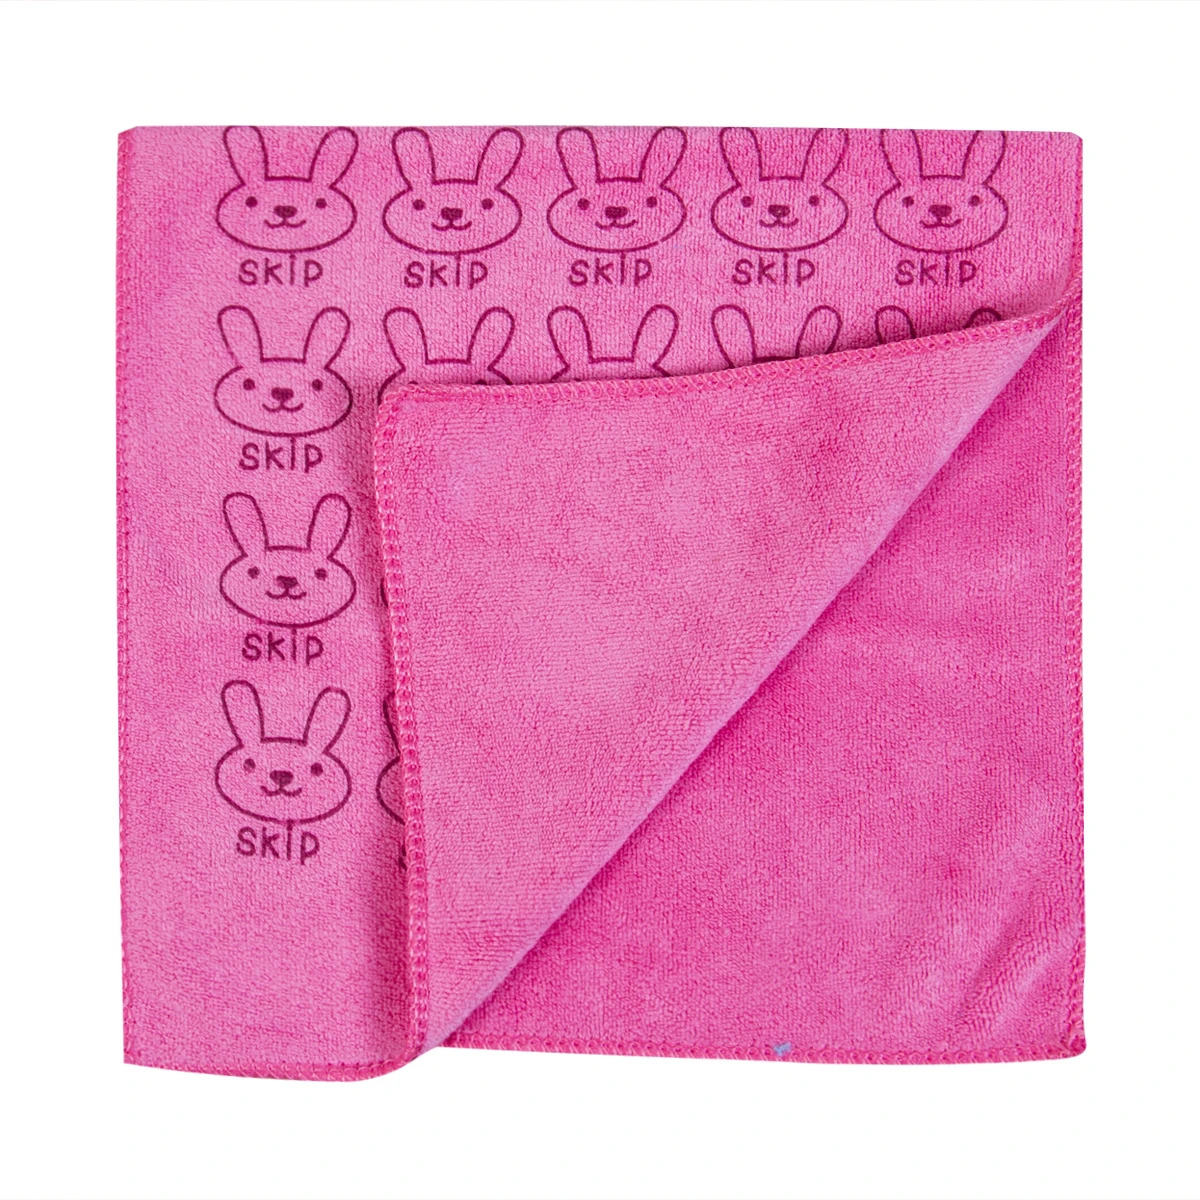 Pudcoco брендовый милый поглотитель из микроволокна для сушки ванны пляжное полотенце мочалка купальный костюм детское полотенце - Цвет: Розовый